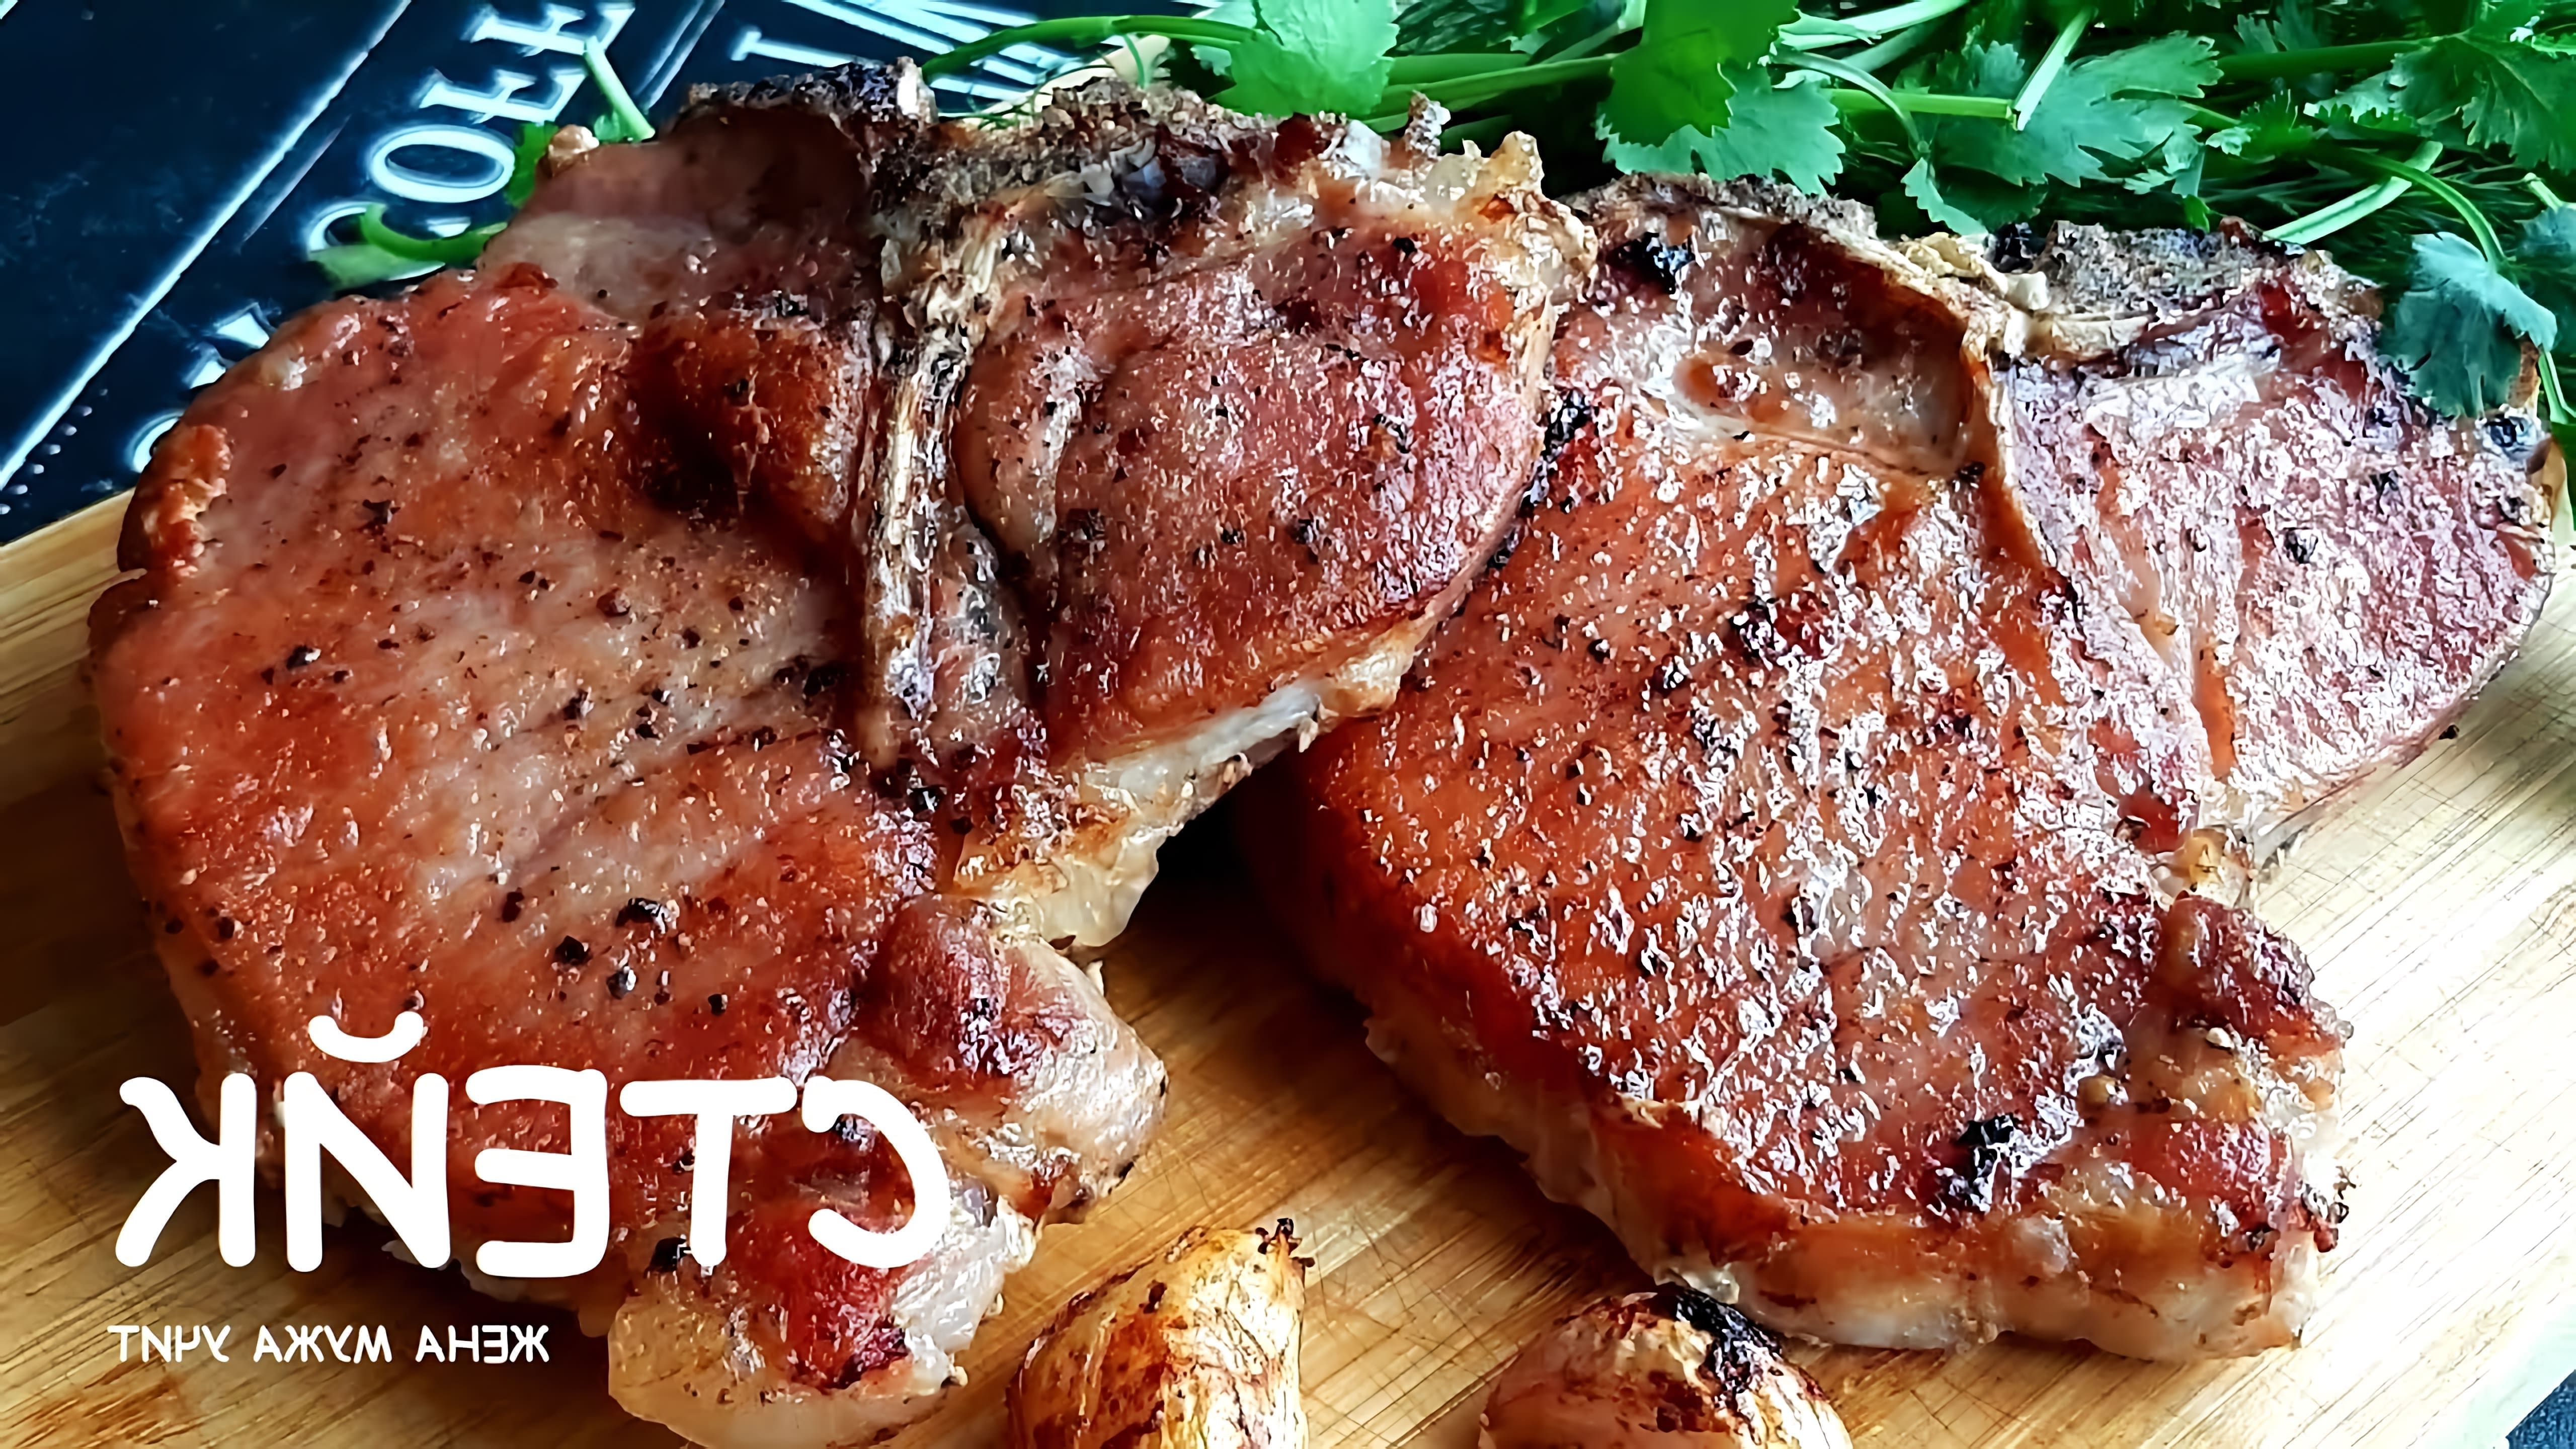 В этом видео демонстрируется процесс приготовления свиных стейков на кости